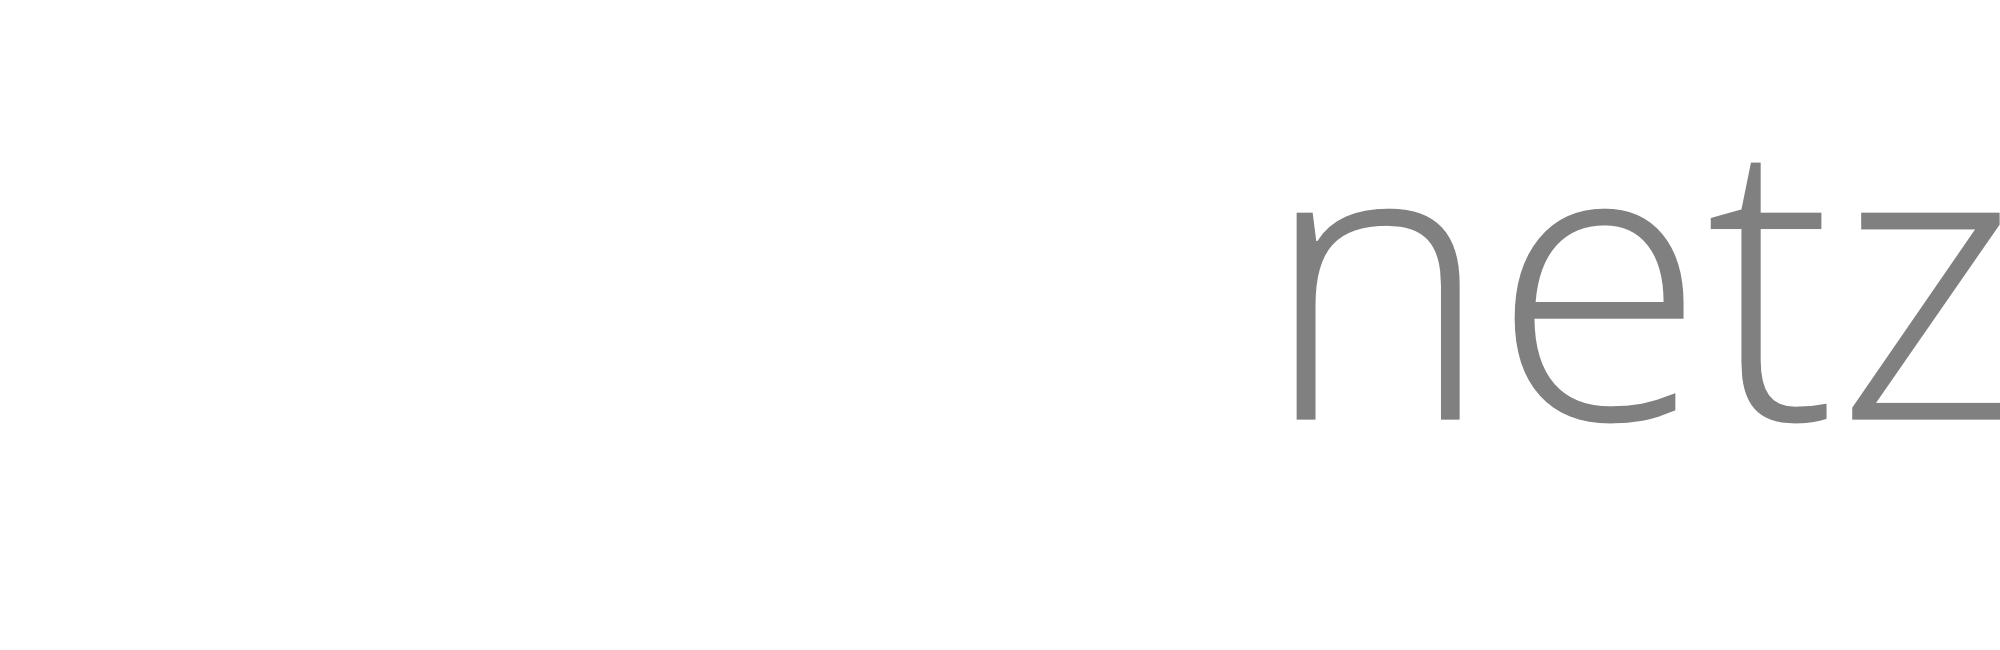 TECHNIKNETZ_Partnerportal_Logo_Mobil